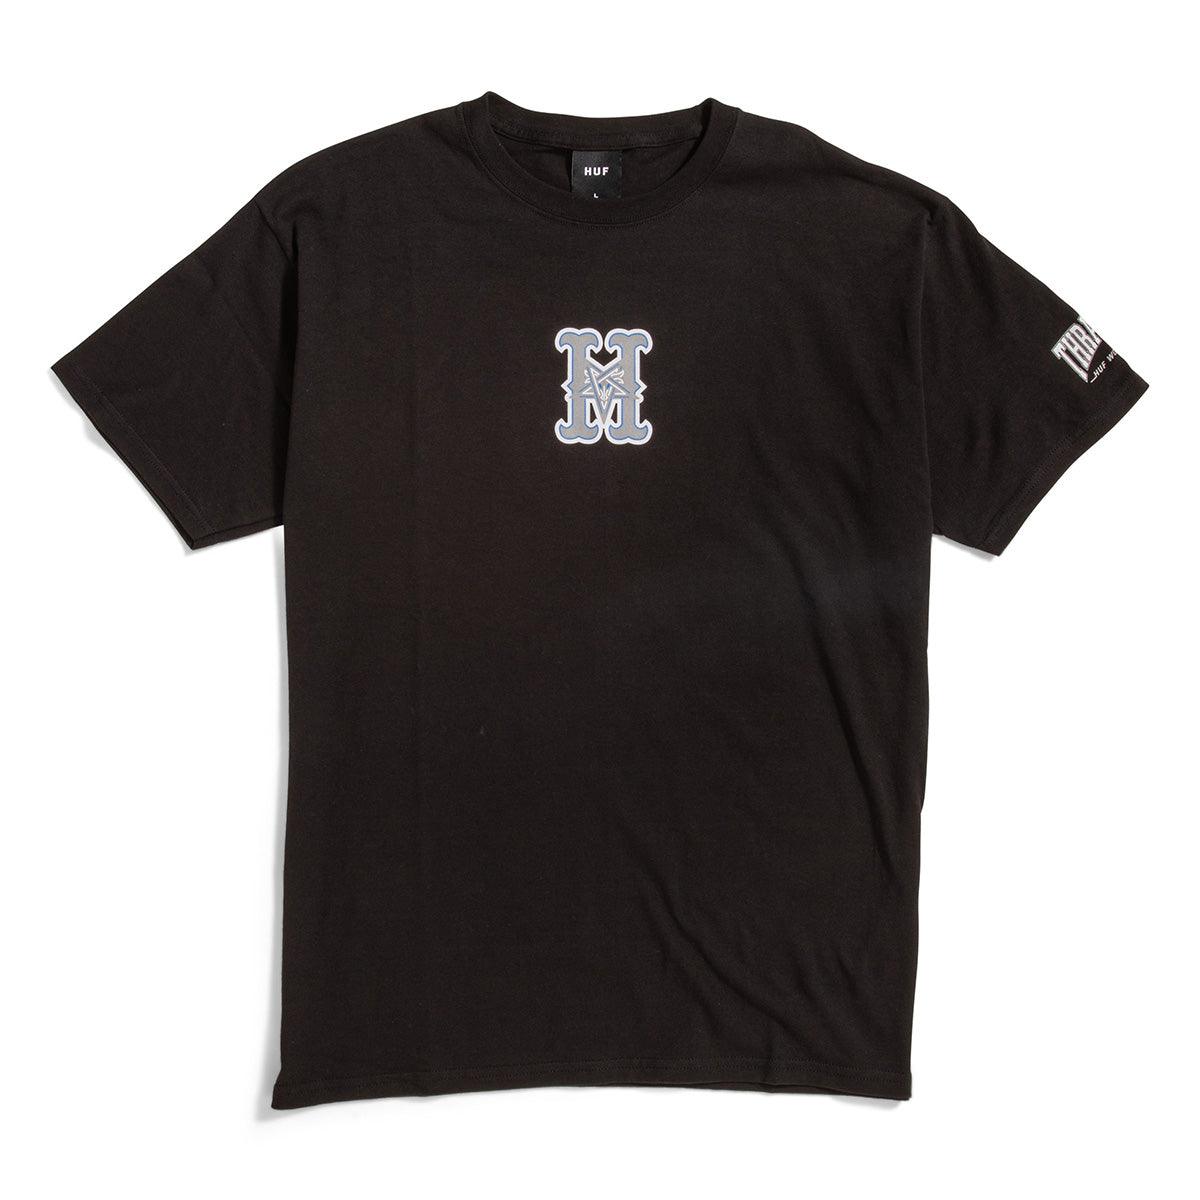 HUF x Thrasher Sunnydale T-Shirt